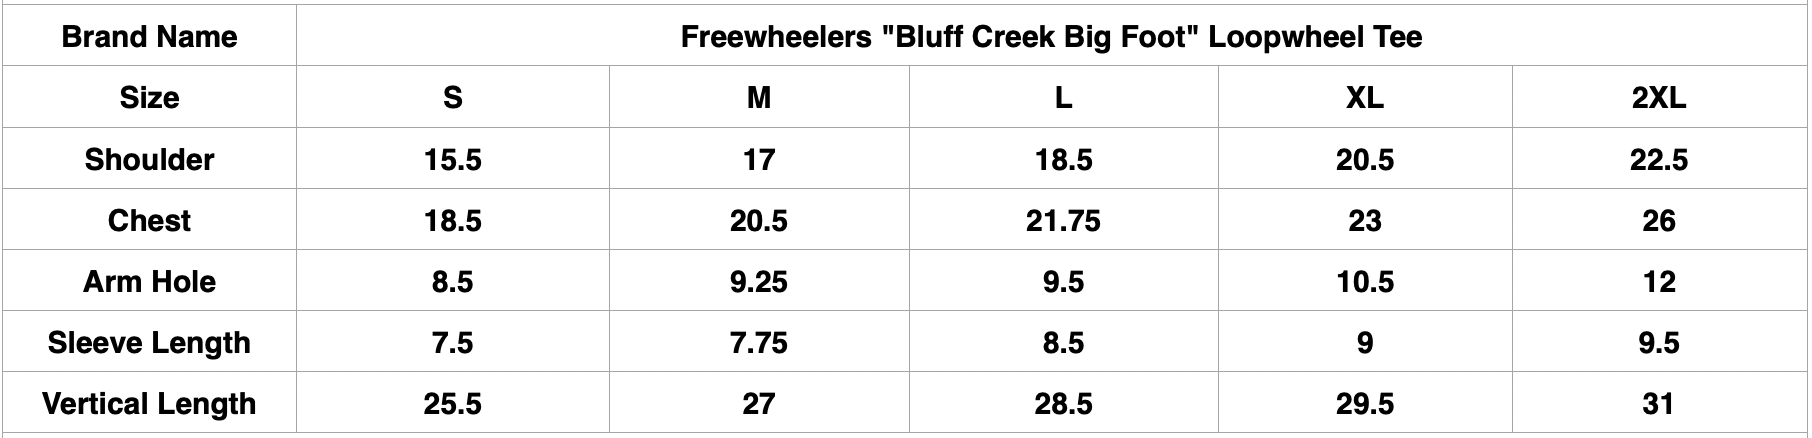 Freewheelers "Bluff Creek Big Foot" Loopwheel Tee (Mix Grey)